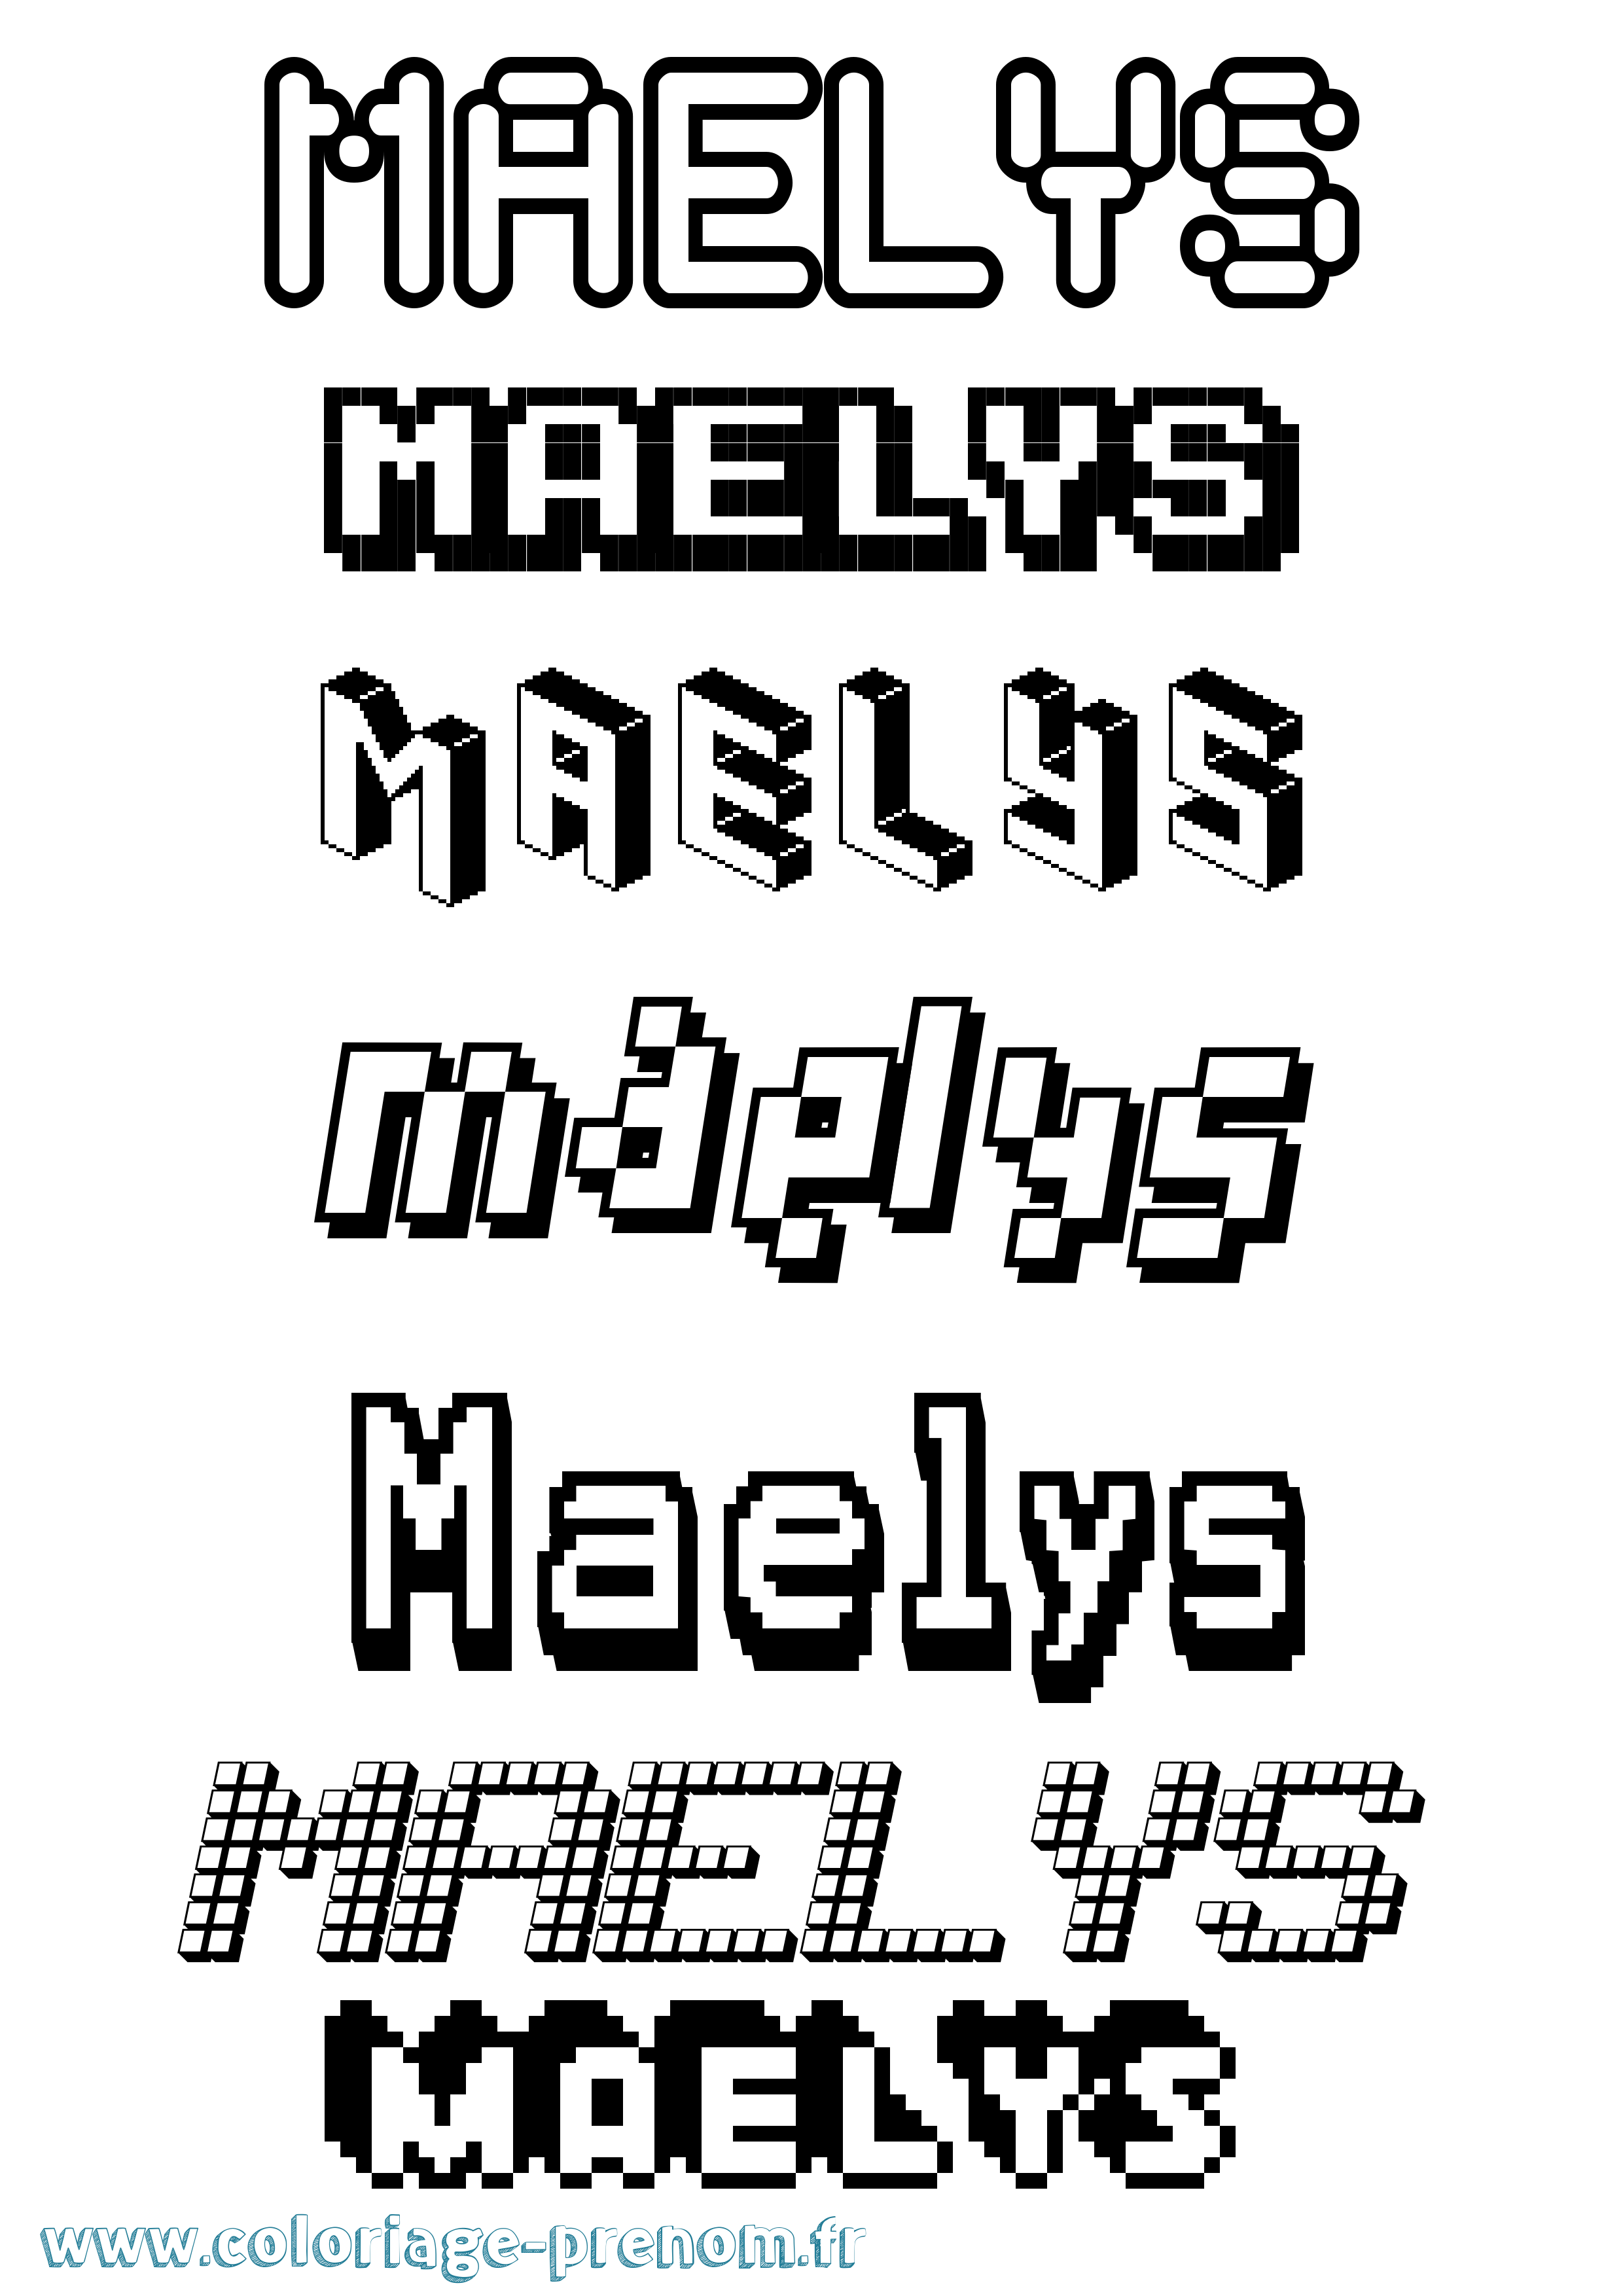 Coloriage prénom Maelys